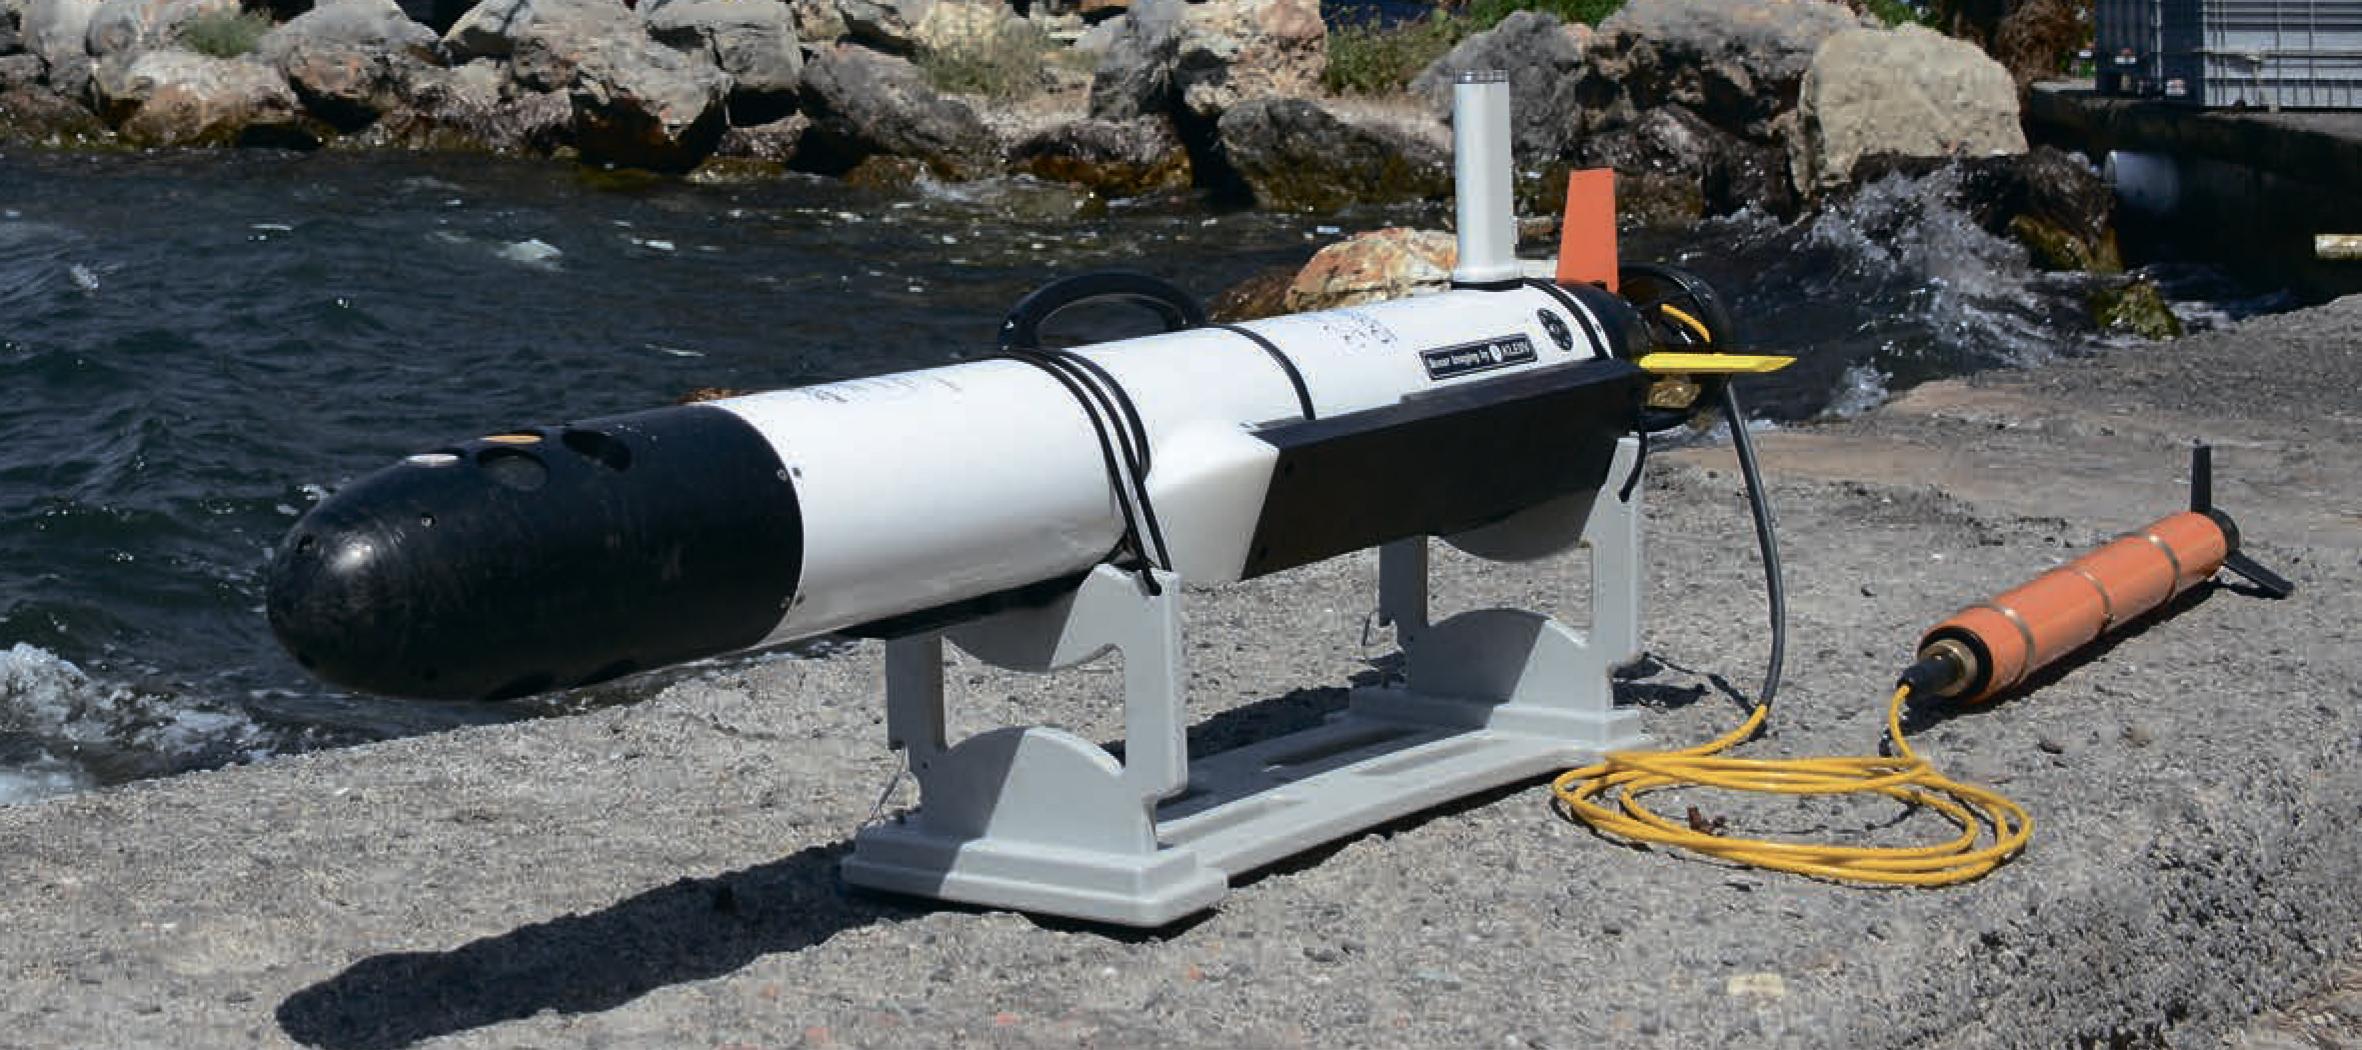 Explorer AUV Автономный необитаемый подводный аппарат